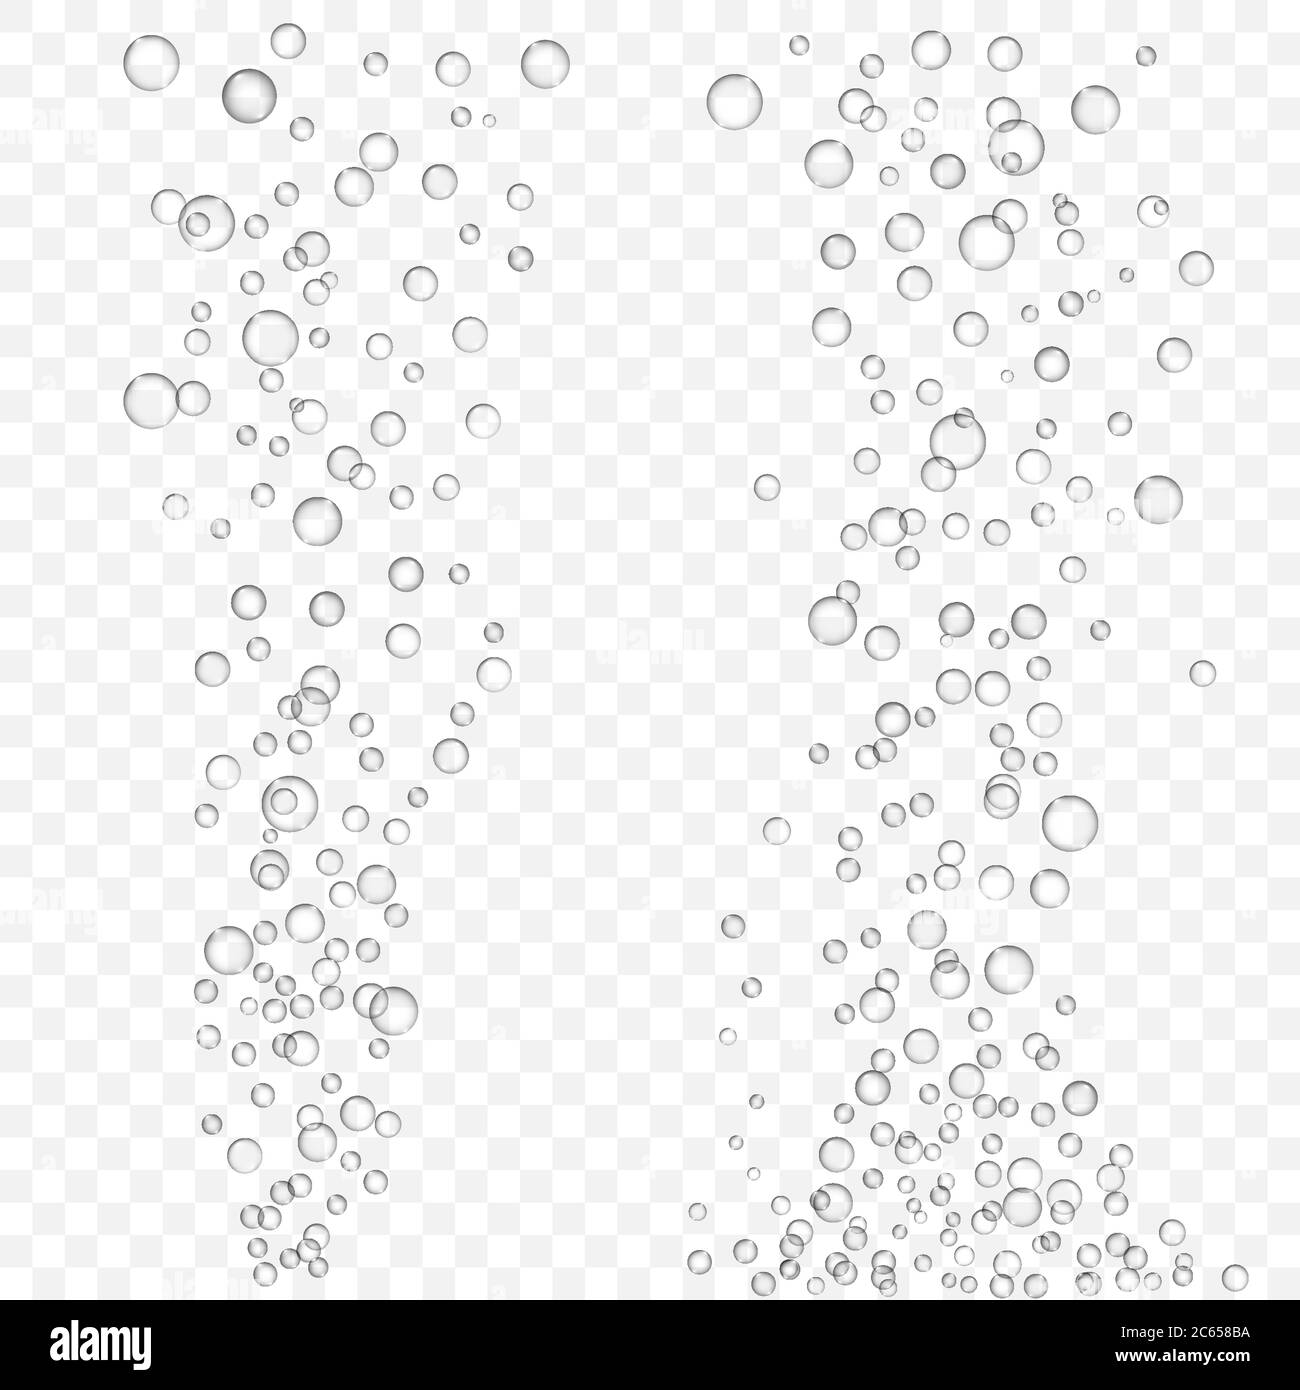 Texture des bulles d'air vectorielles isolée sur un arrière-plan transparent. Bulles blanches dans l'eau, le champagne ou la boisson gazeuse. Transparent realisti Illustration de Vecteur